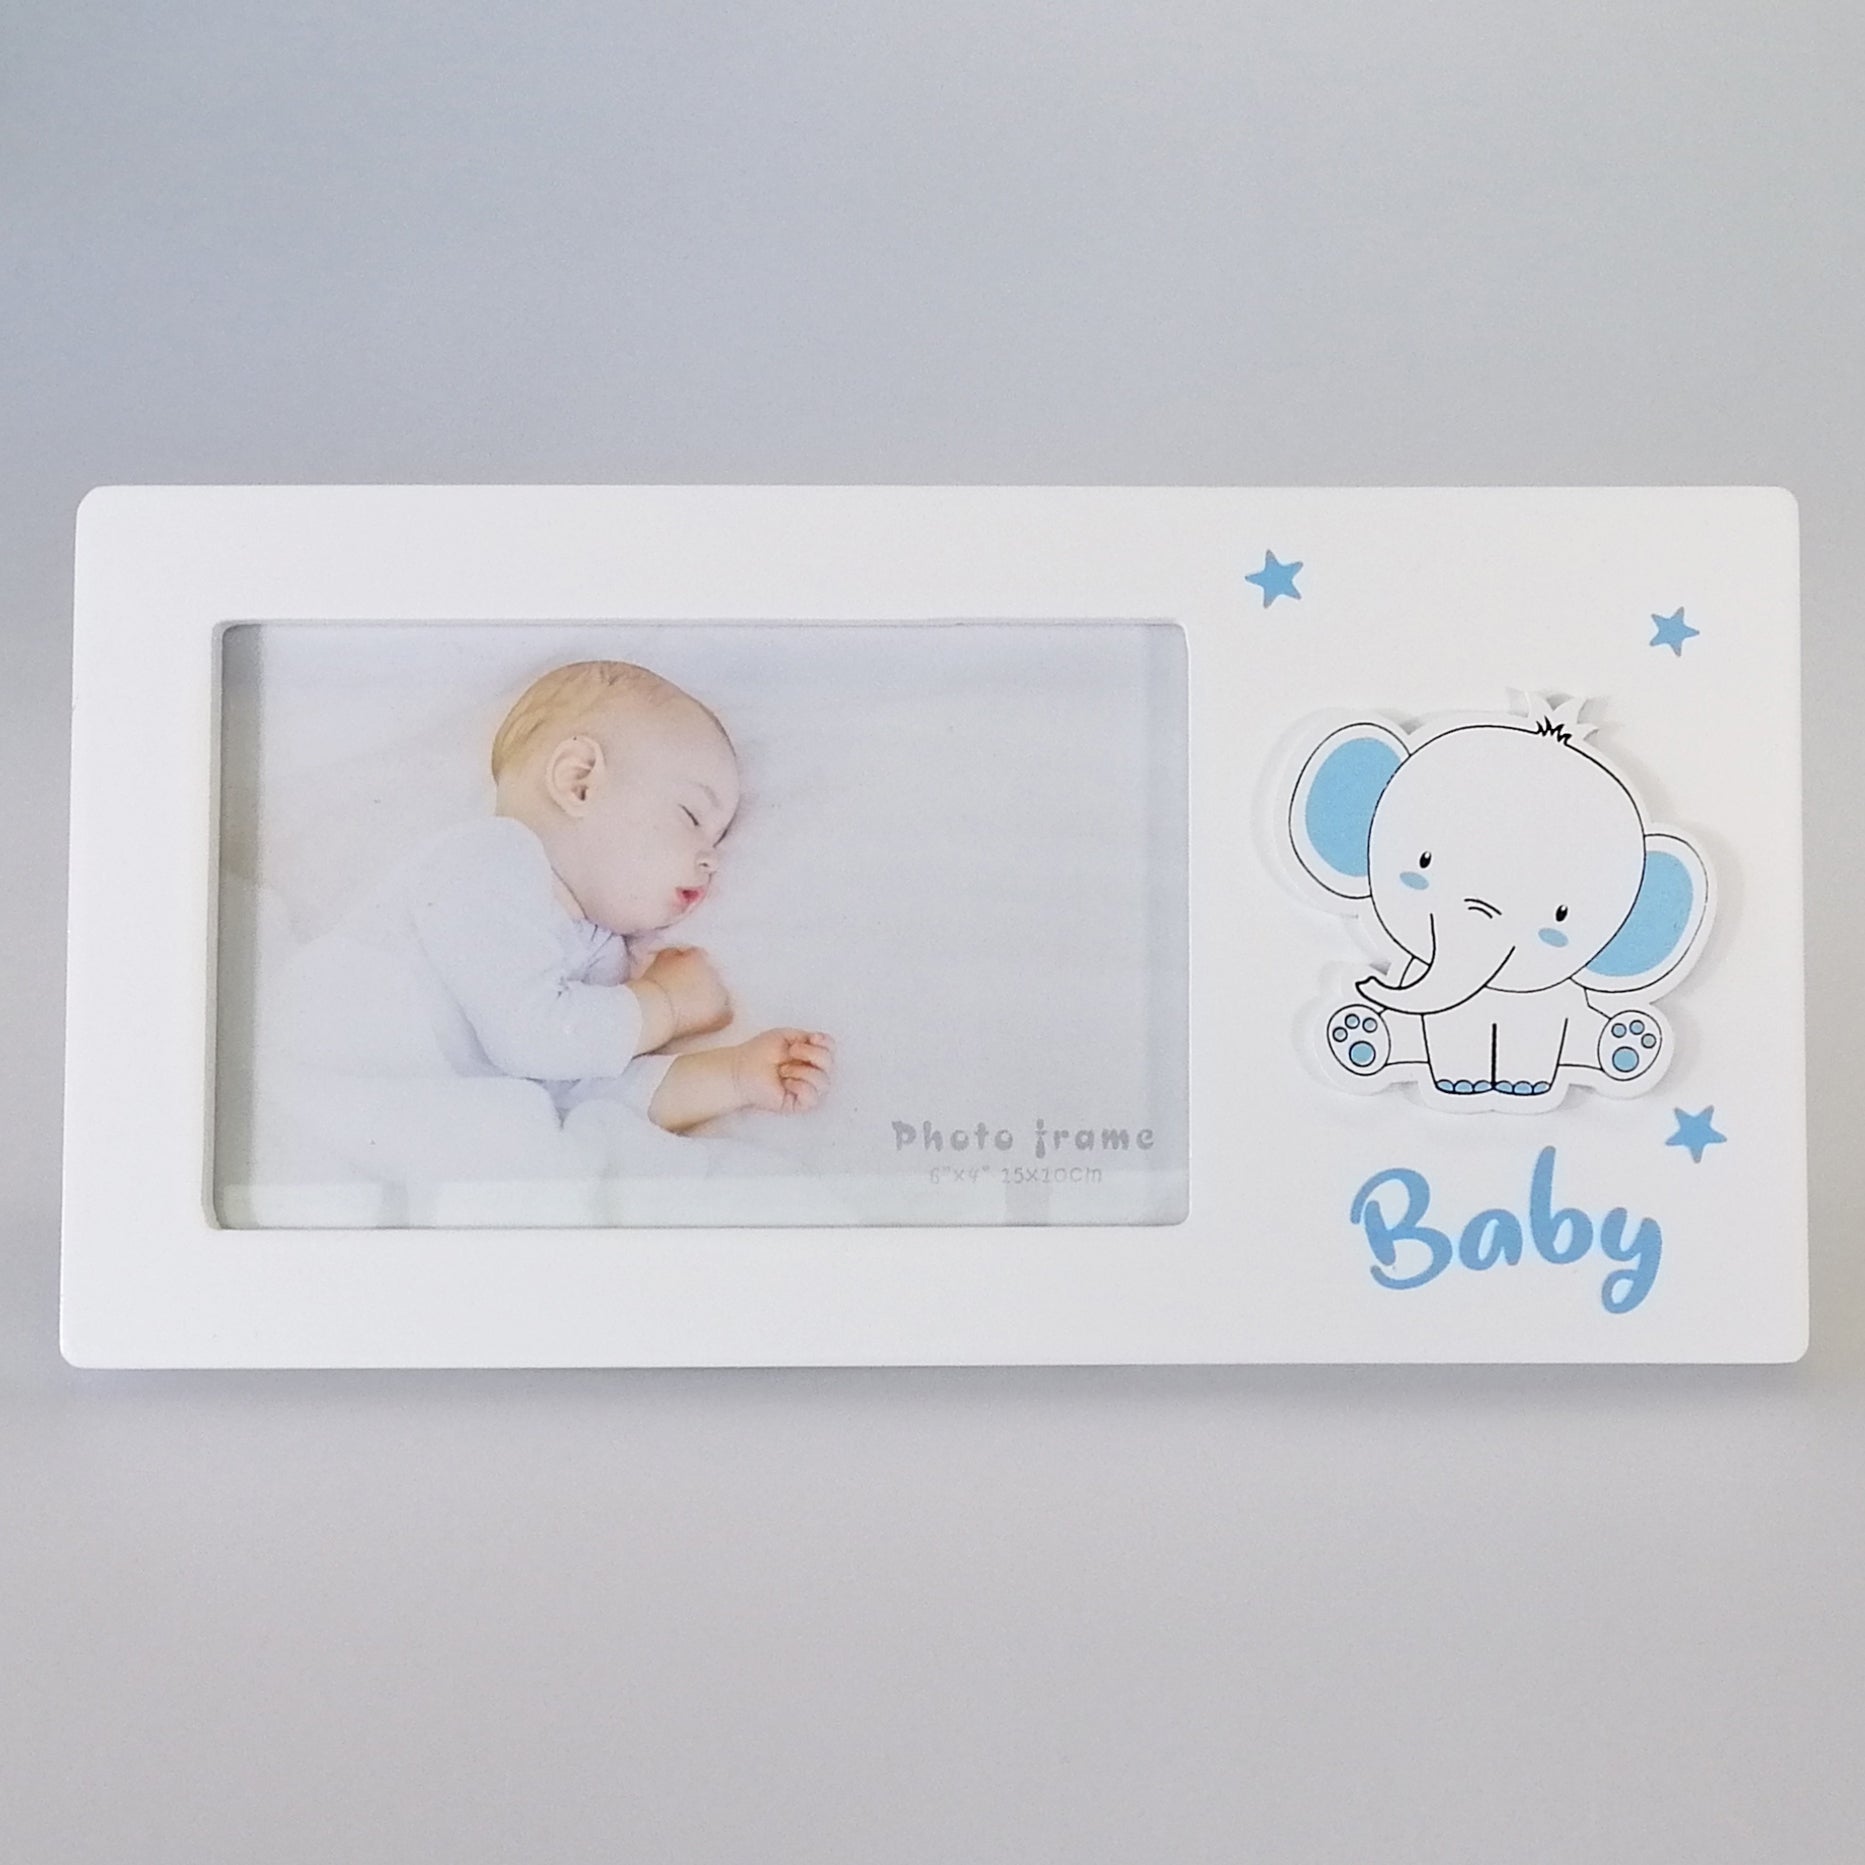 Baby Photo Frame 4"x 6" - Blue Elephant